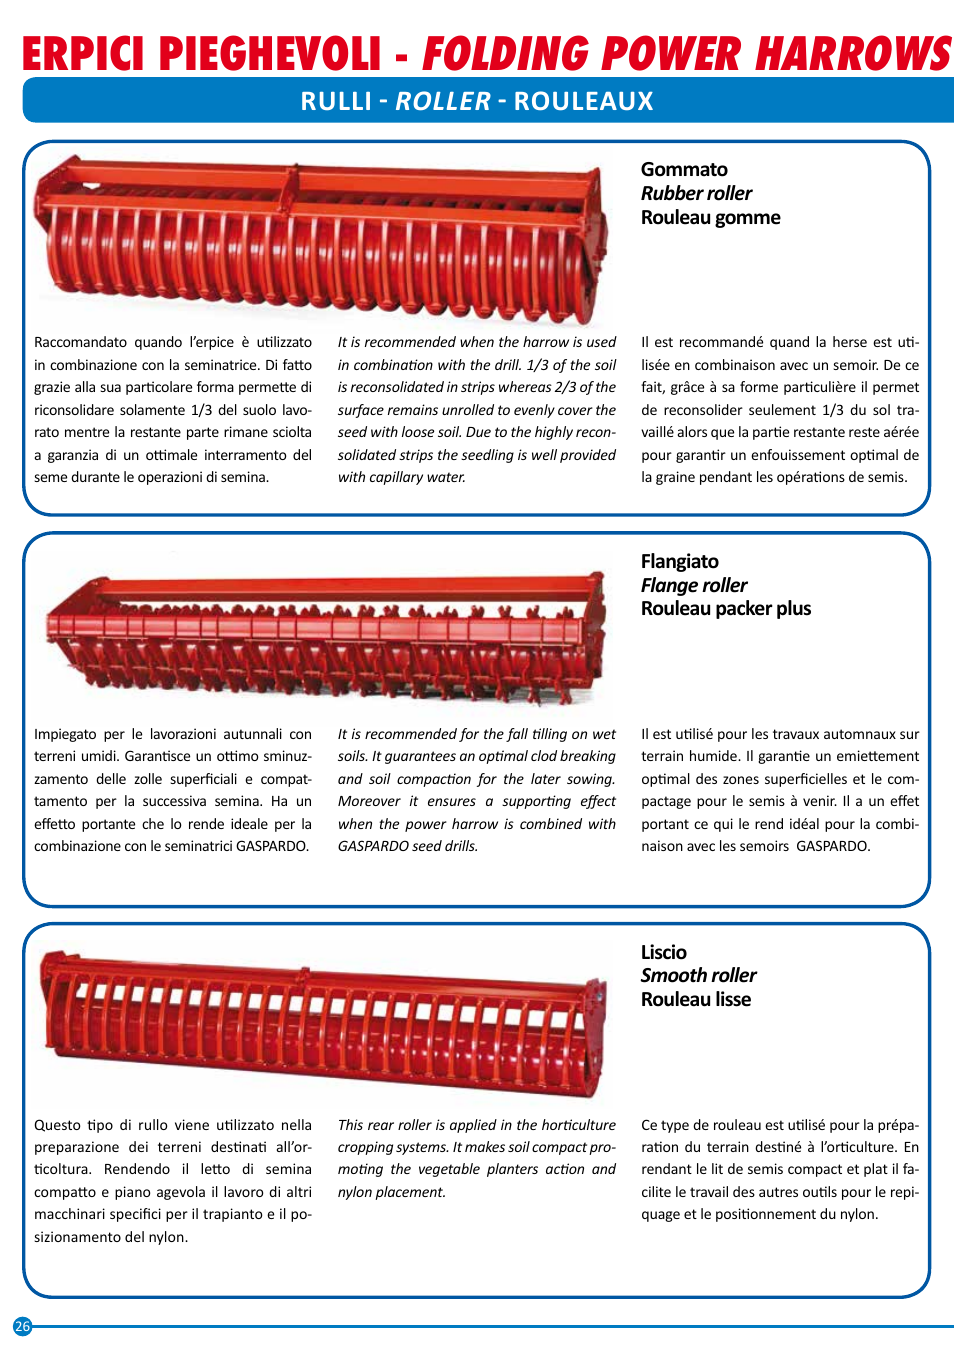 Folding power harrows, Erpici pieghevoli, Herses rotatives pliables |  Maschio Gaspardo AQUILA RAPIDO PLUS User Manual | Page 26 / 28 | Original  mode